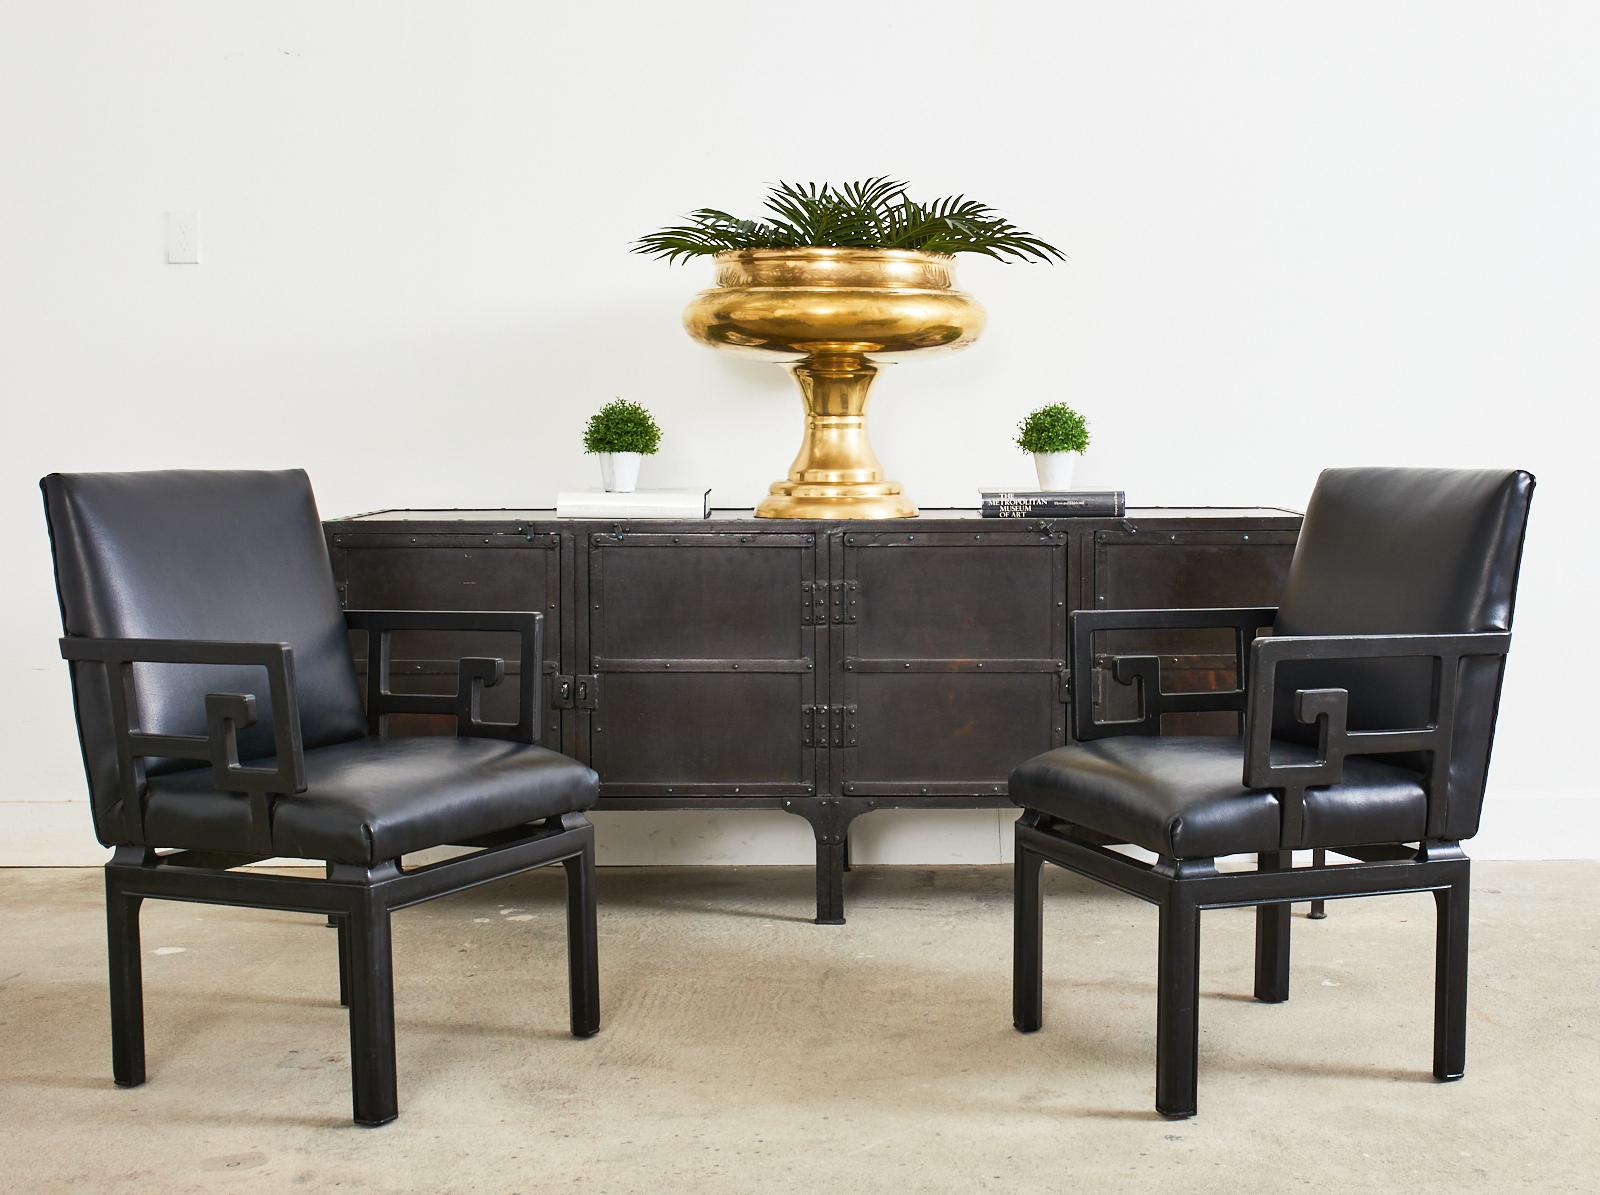 Seltenes Paar Sessel im Stil der Jahrhundertmitte, entworfen von Michael Taylor für die Baker Far East Collection. Die Stühle haben ein Gestell aus Hartholz, das schwarz lackiert und ebonisiert ist. Die dekorativen Wappen haben ein großes